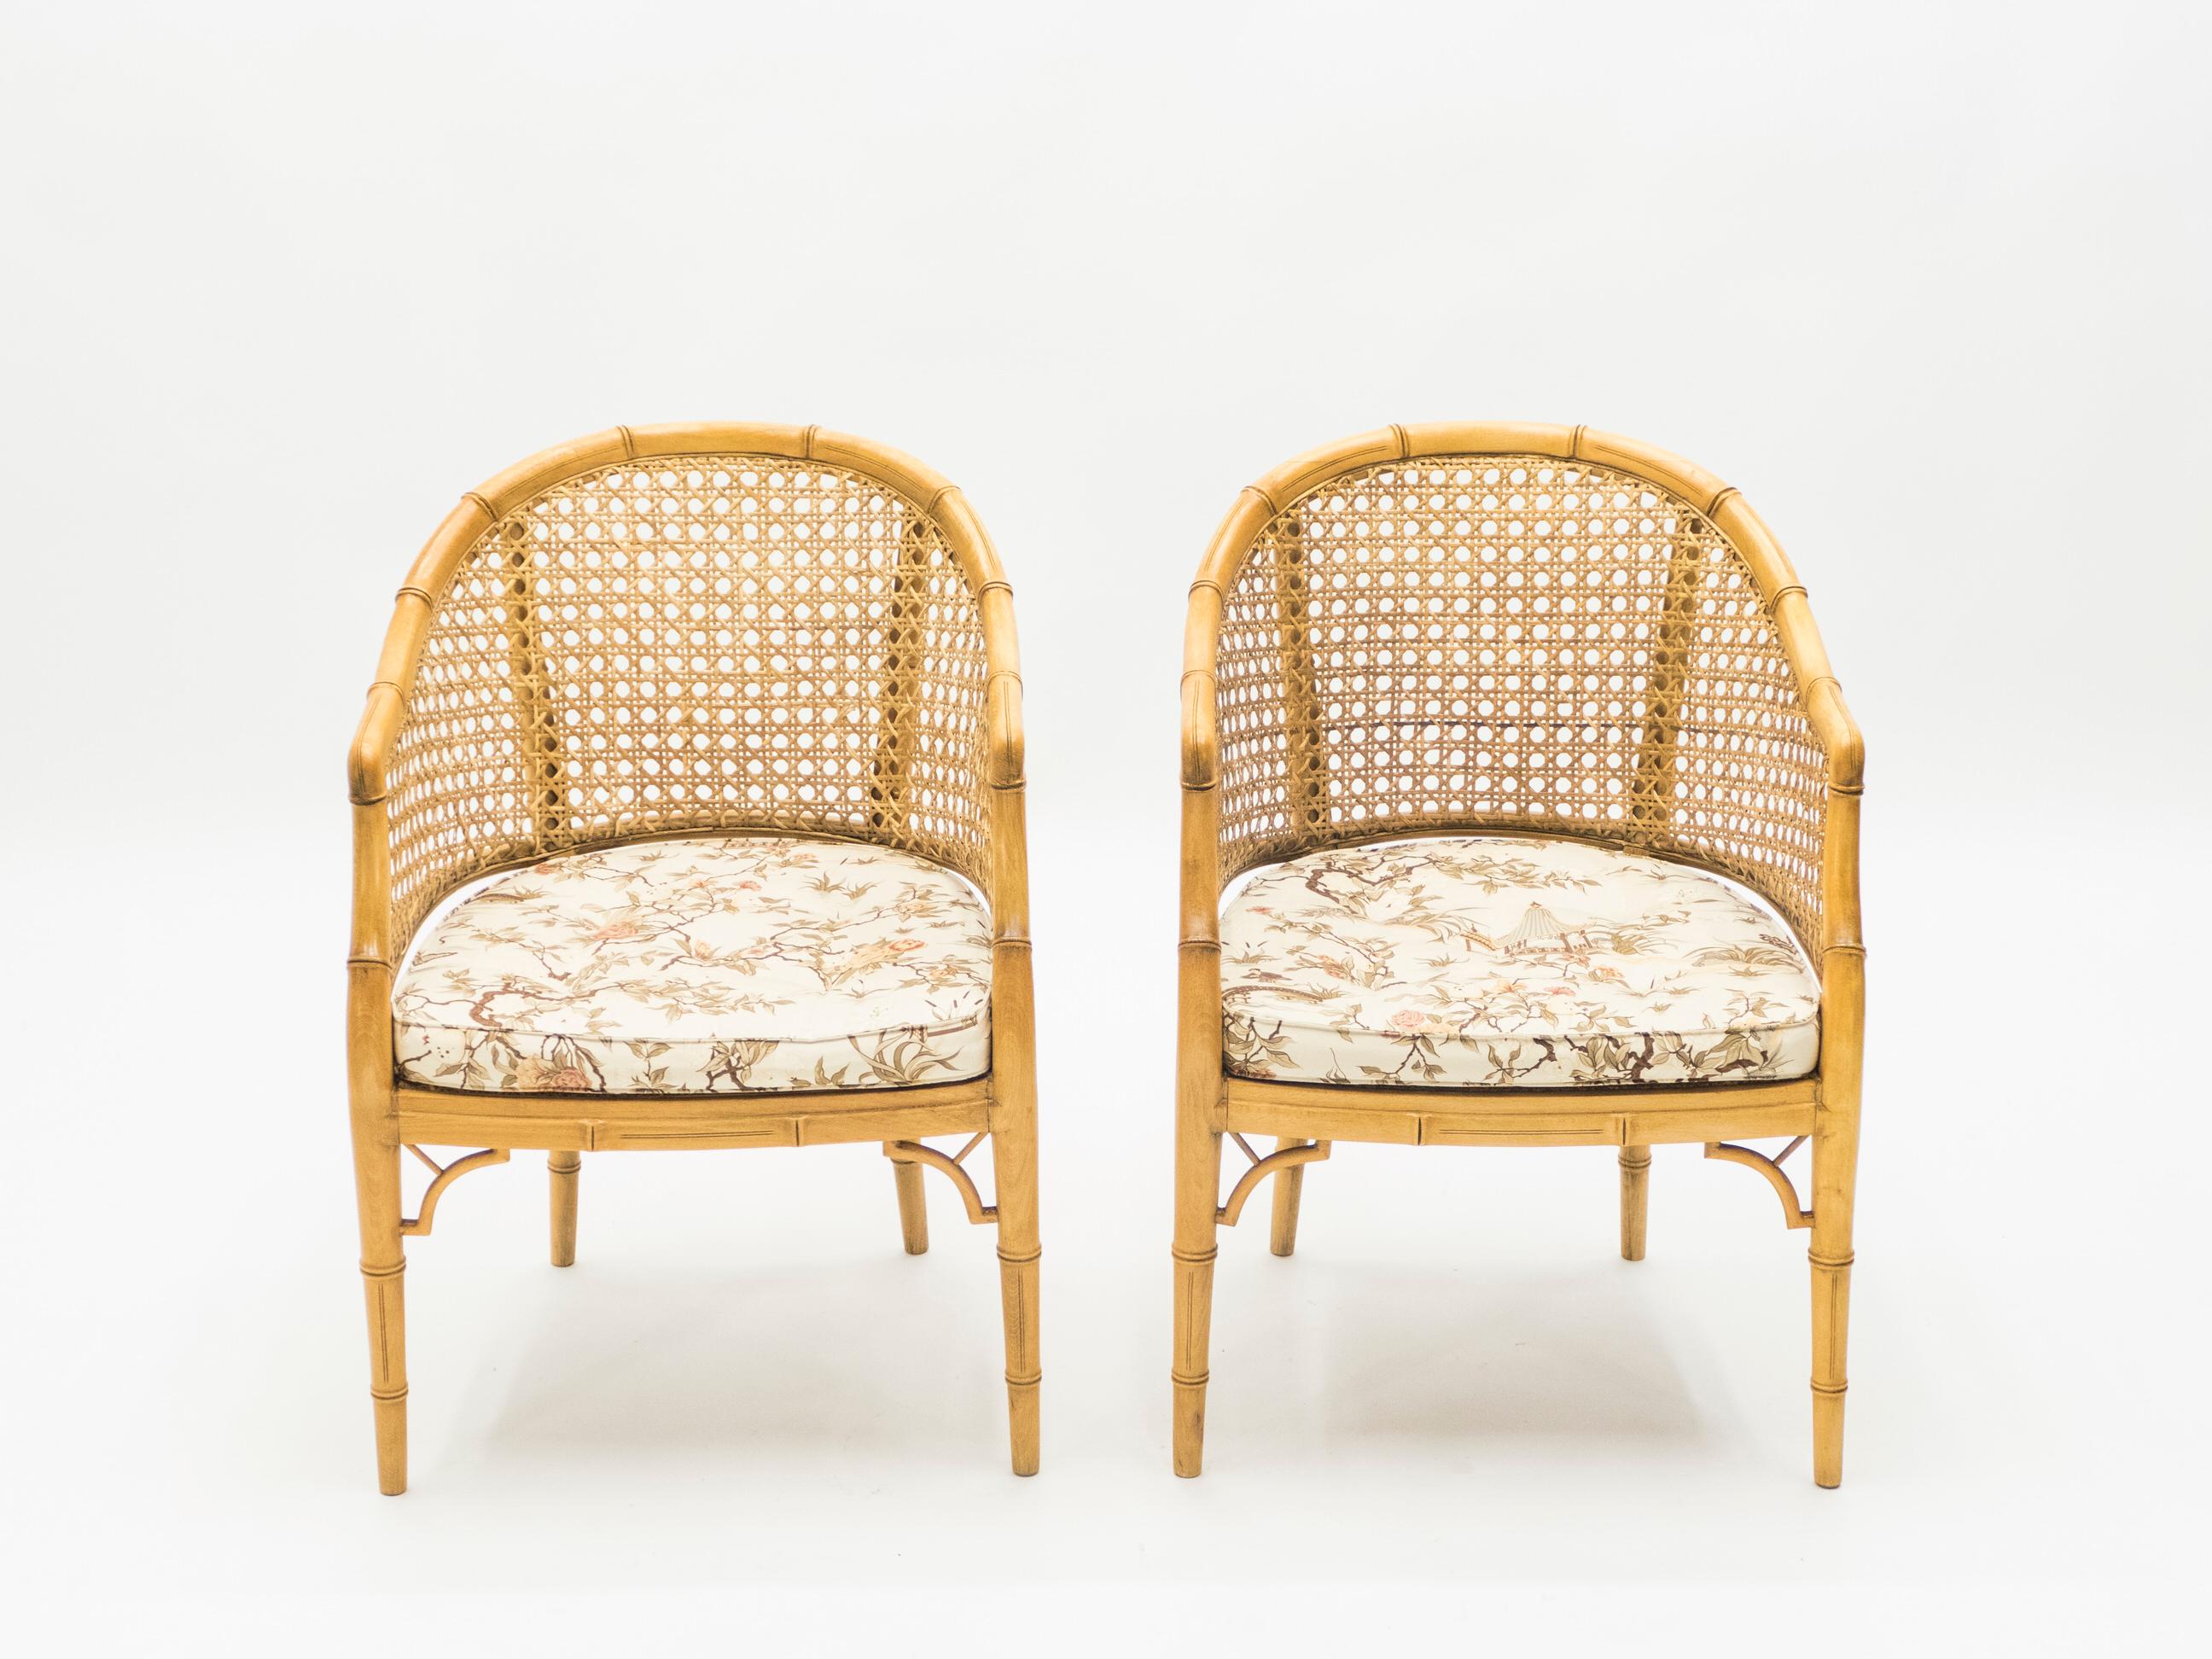 Dieses Paar Bambussessel aus der Mid-Century-Modern-Periode an der französischen Riviera strotzt nur so vor Nostalgie. Die leichte, goldfarbene Bambusstruktur, die Sitzfläche aus Schilfrohr und die originell bedruckten Kissen würden sich in einem